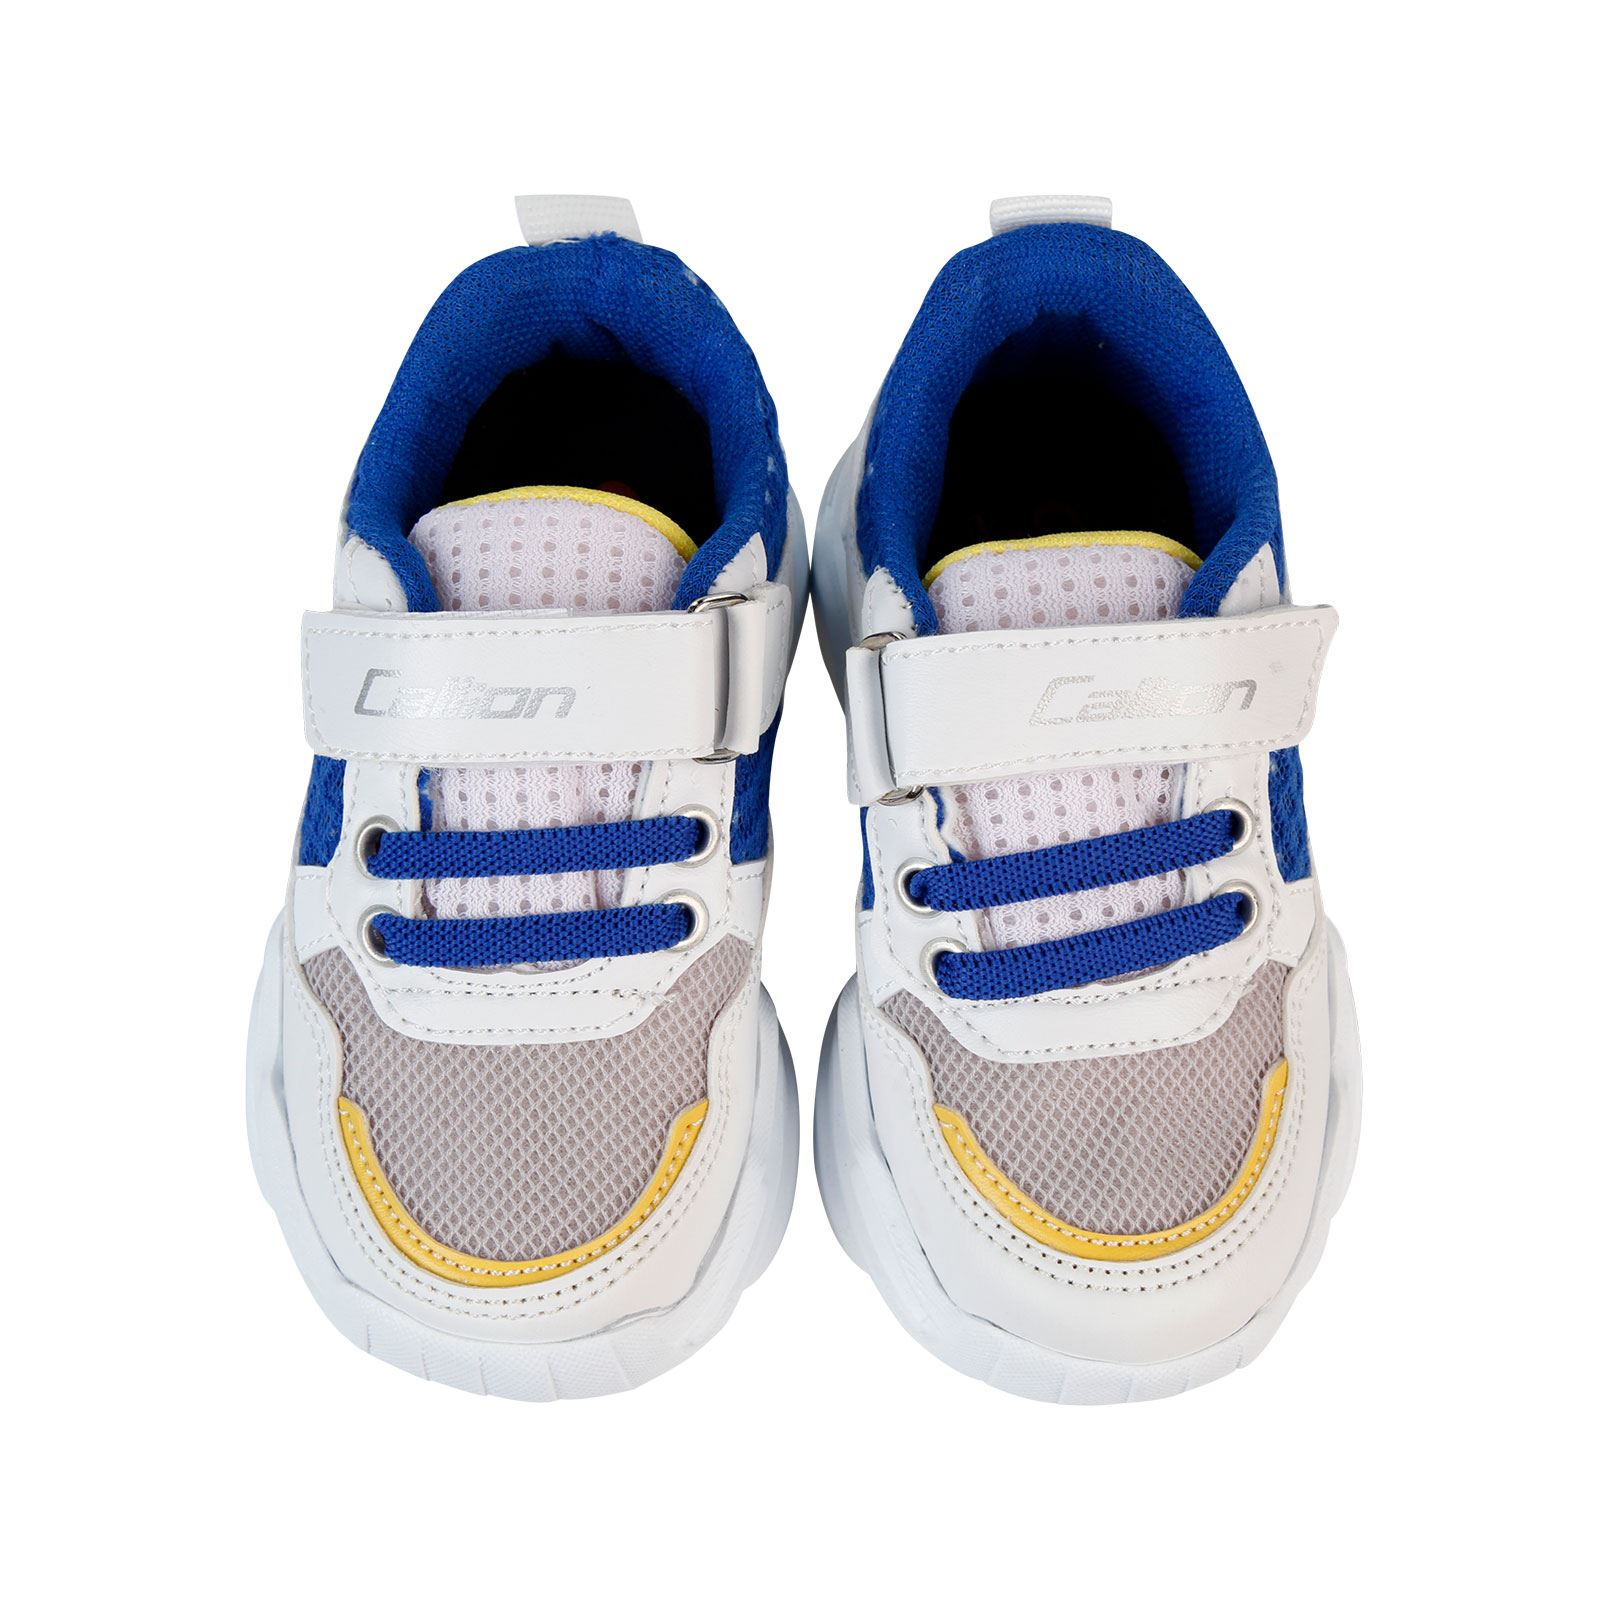 Callion Erkek Çocuk Spor Ayakkabı 22-25 Numara Beyaz